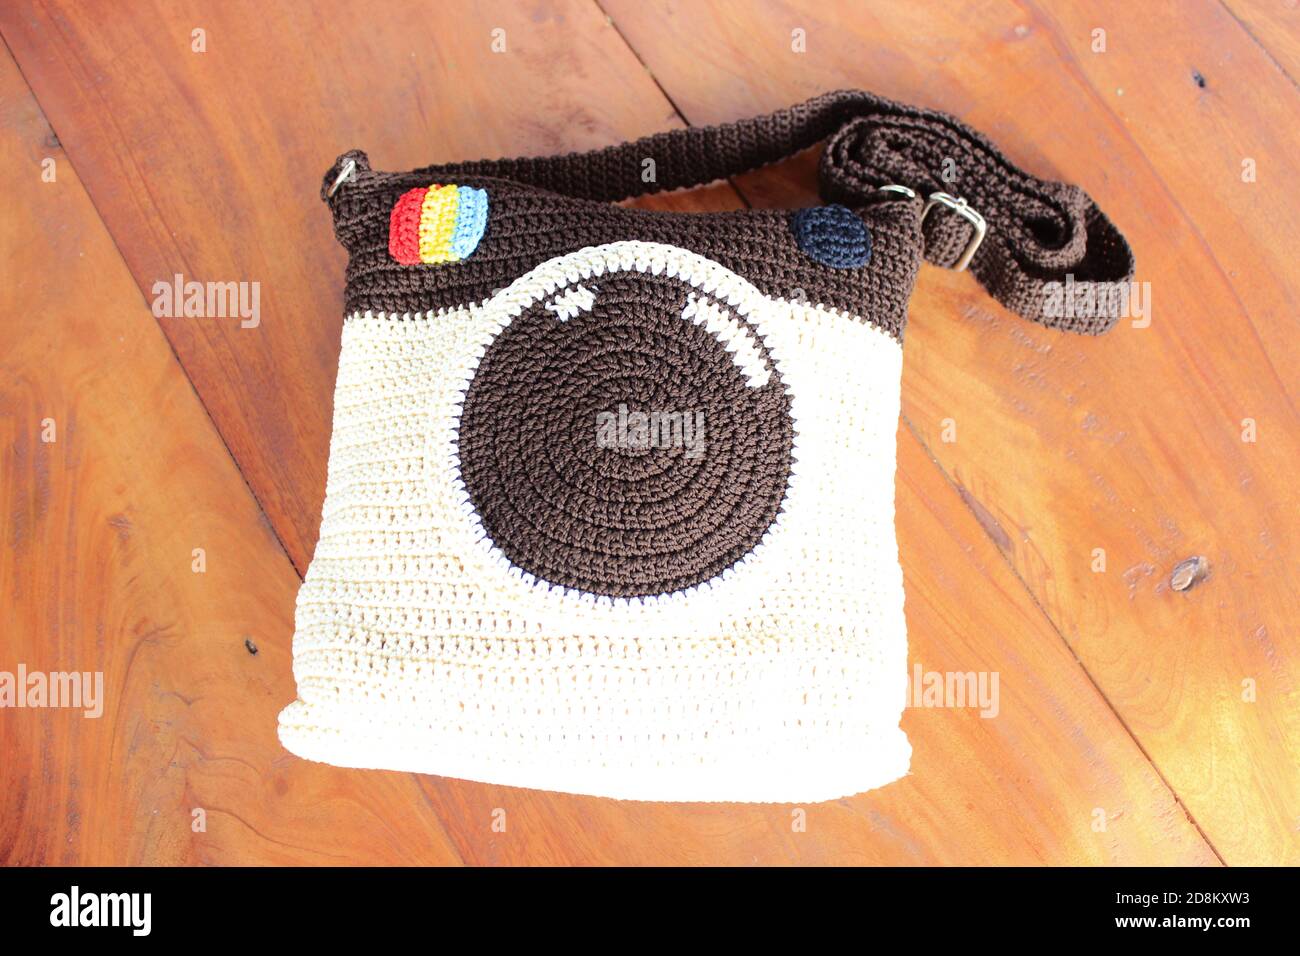 Sac en tricot en forme d'icône Instagram dans un belvédère Avec une base en teck - avant Banque D'Images